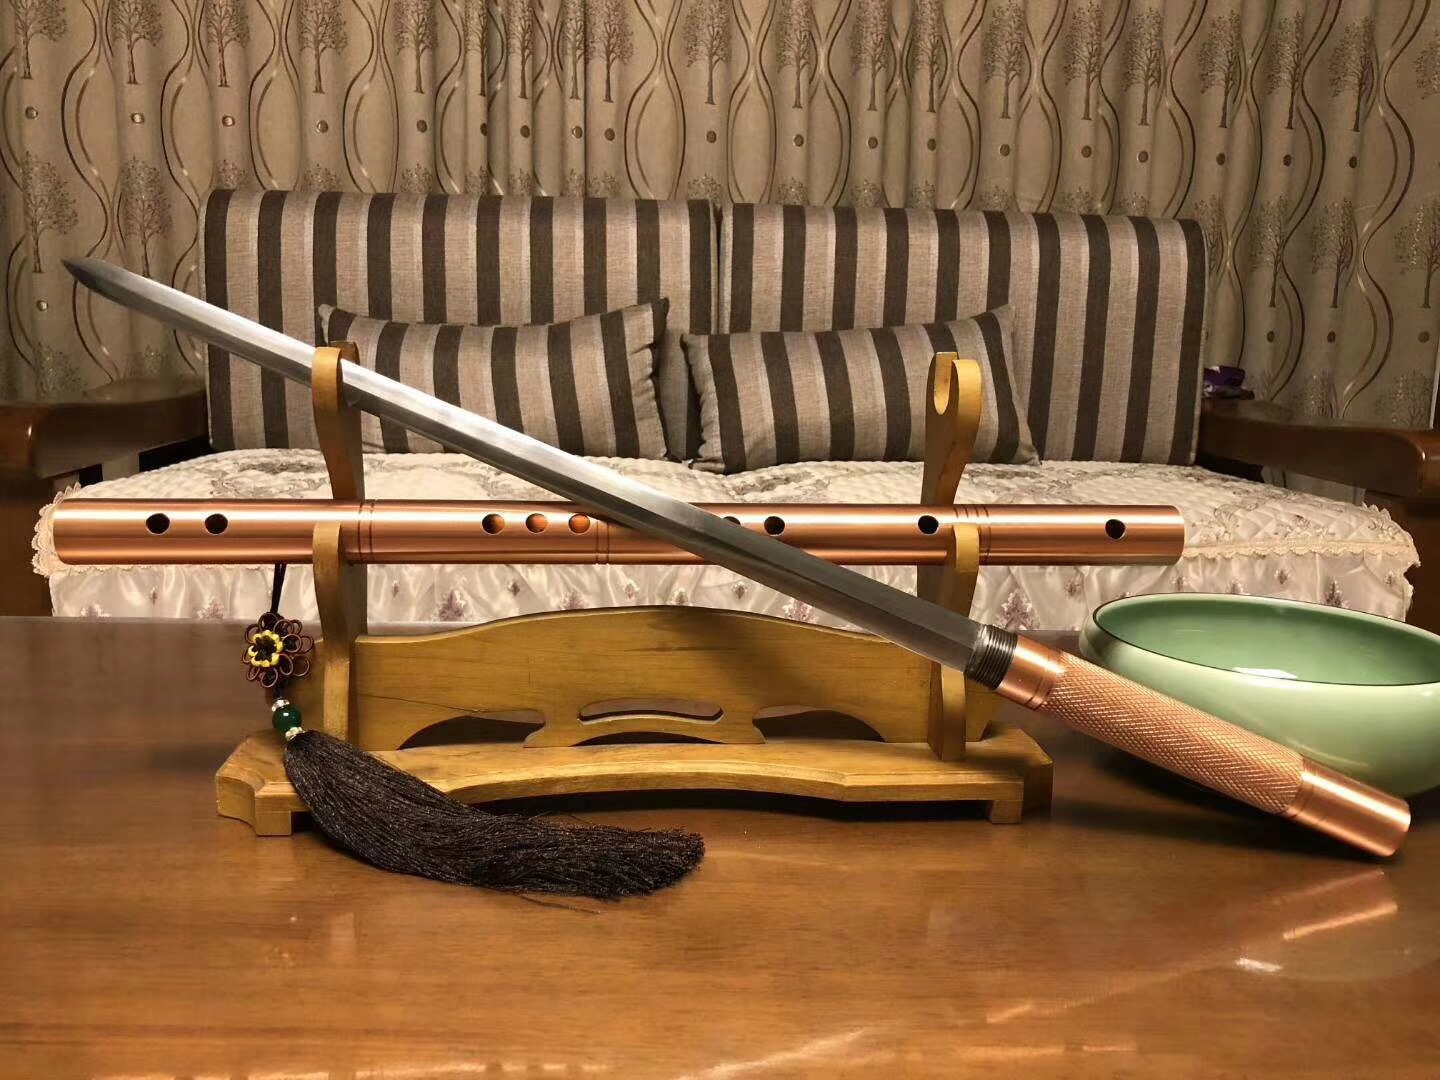 剑鞘竹笛图片